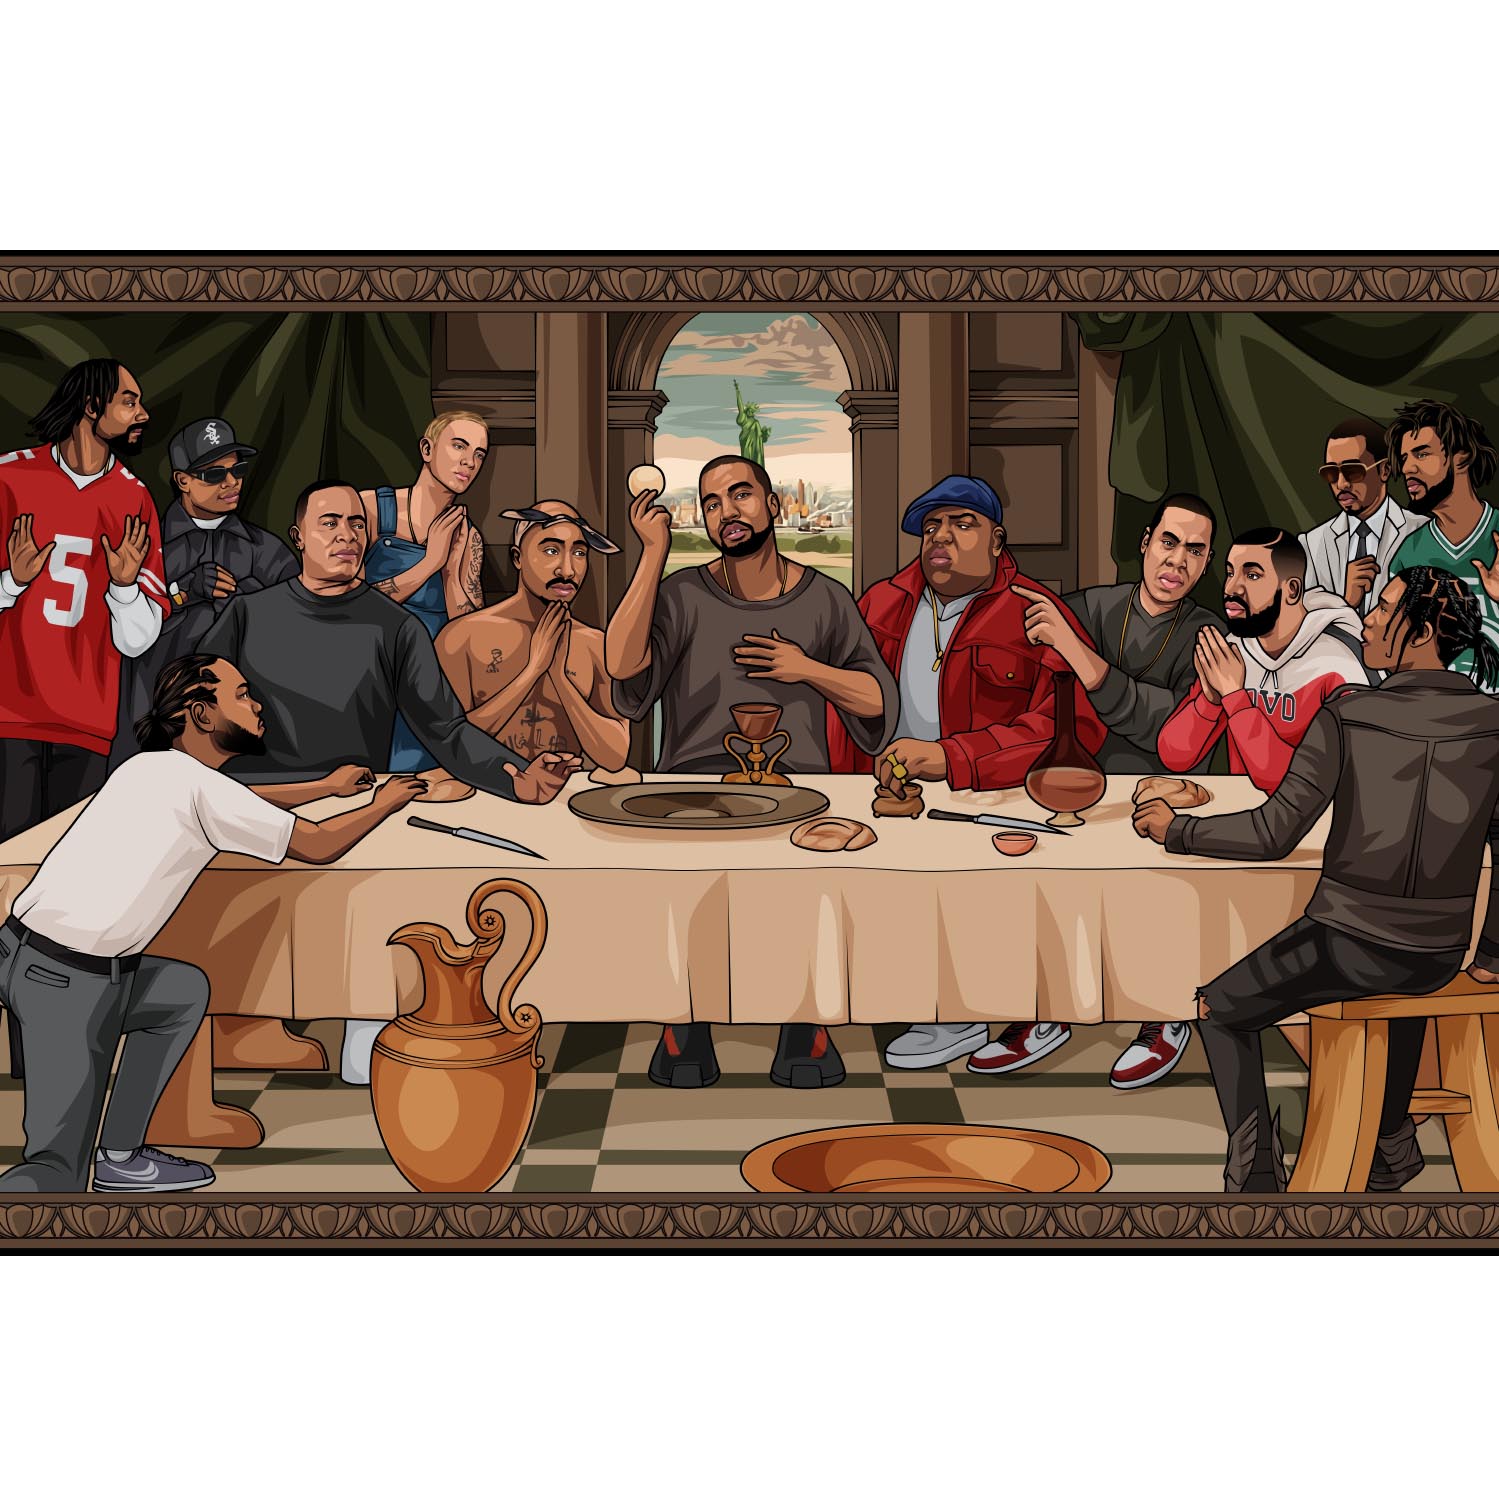 Poster - The Last Supper Of Rap-hotRAGS.com